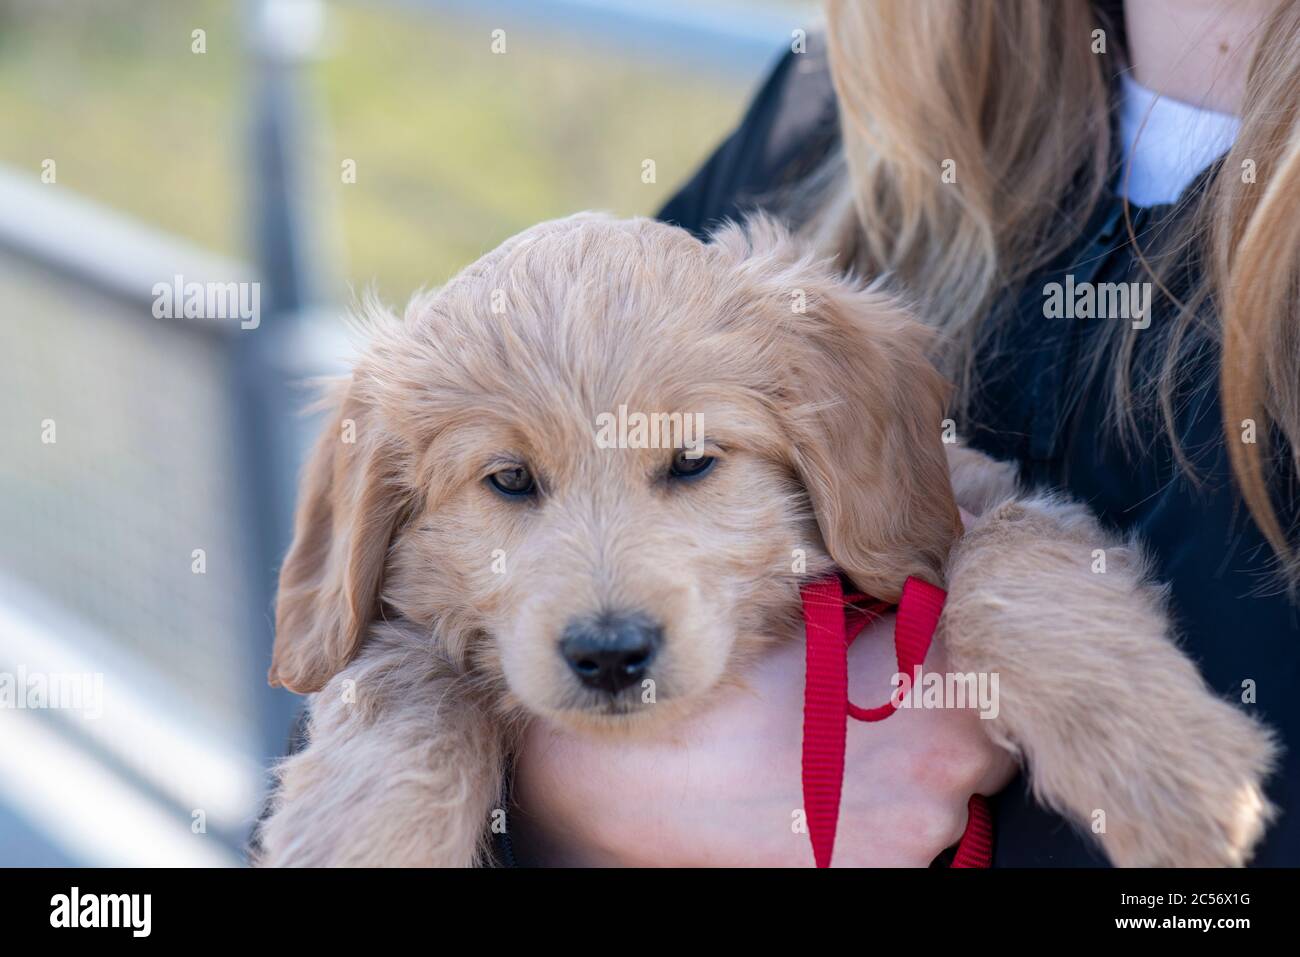 Un Mini Goldendoodle di 8 settimane (una miscela di Golden Retriever e Miniature Poodle) può essere trasportato dal suo proprietario. Foto Stock